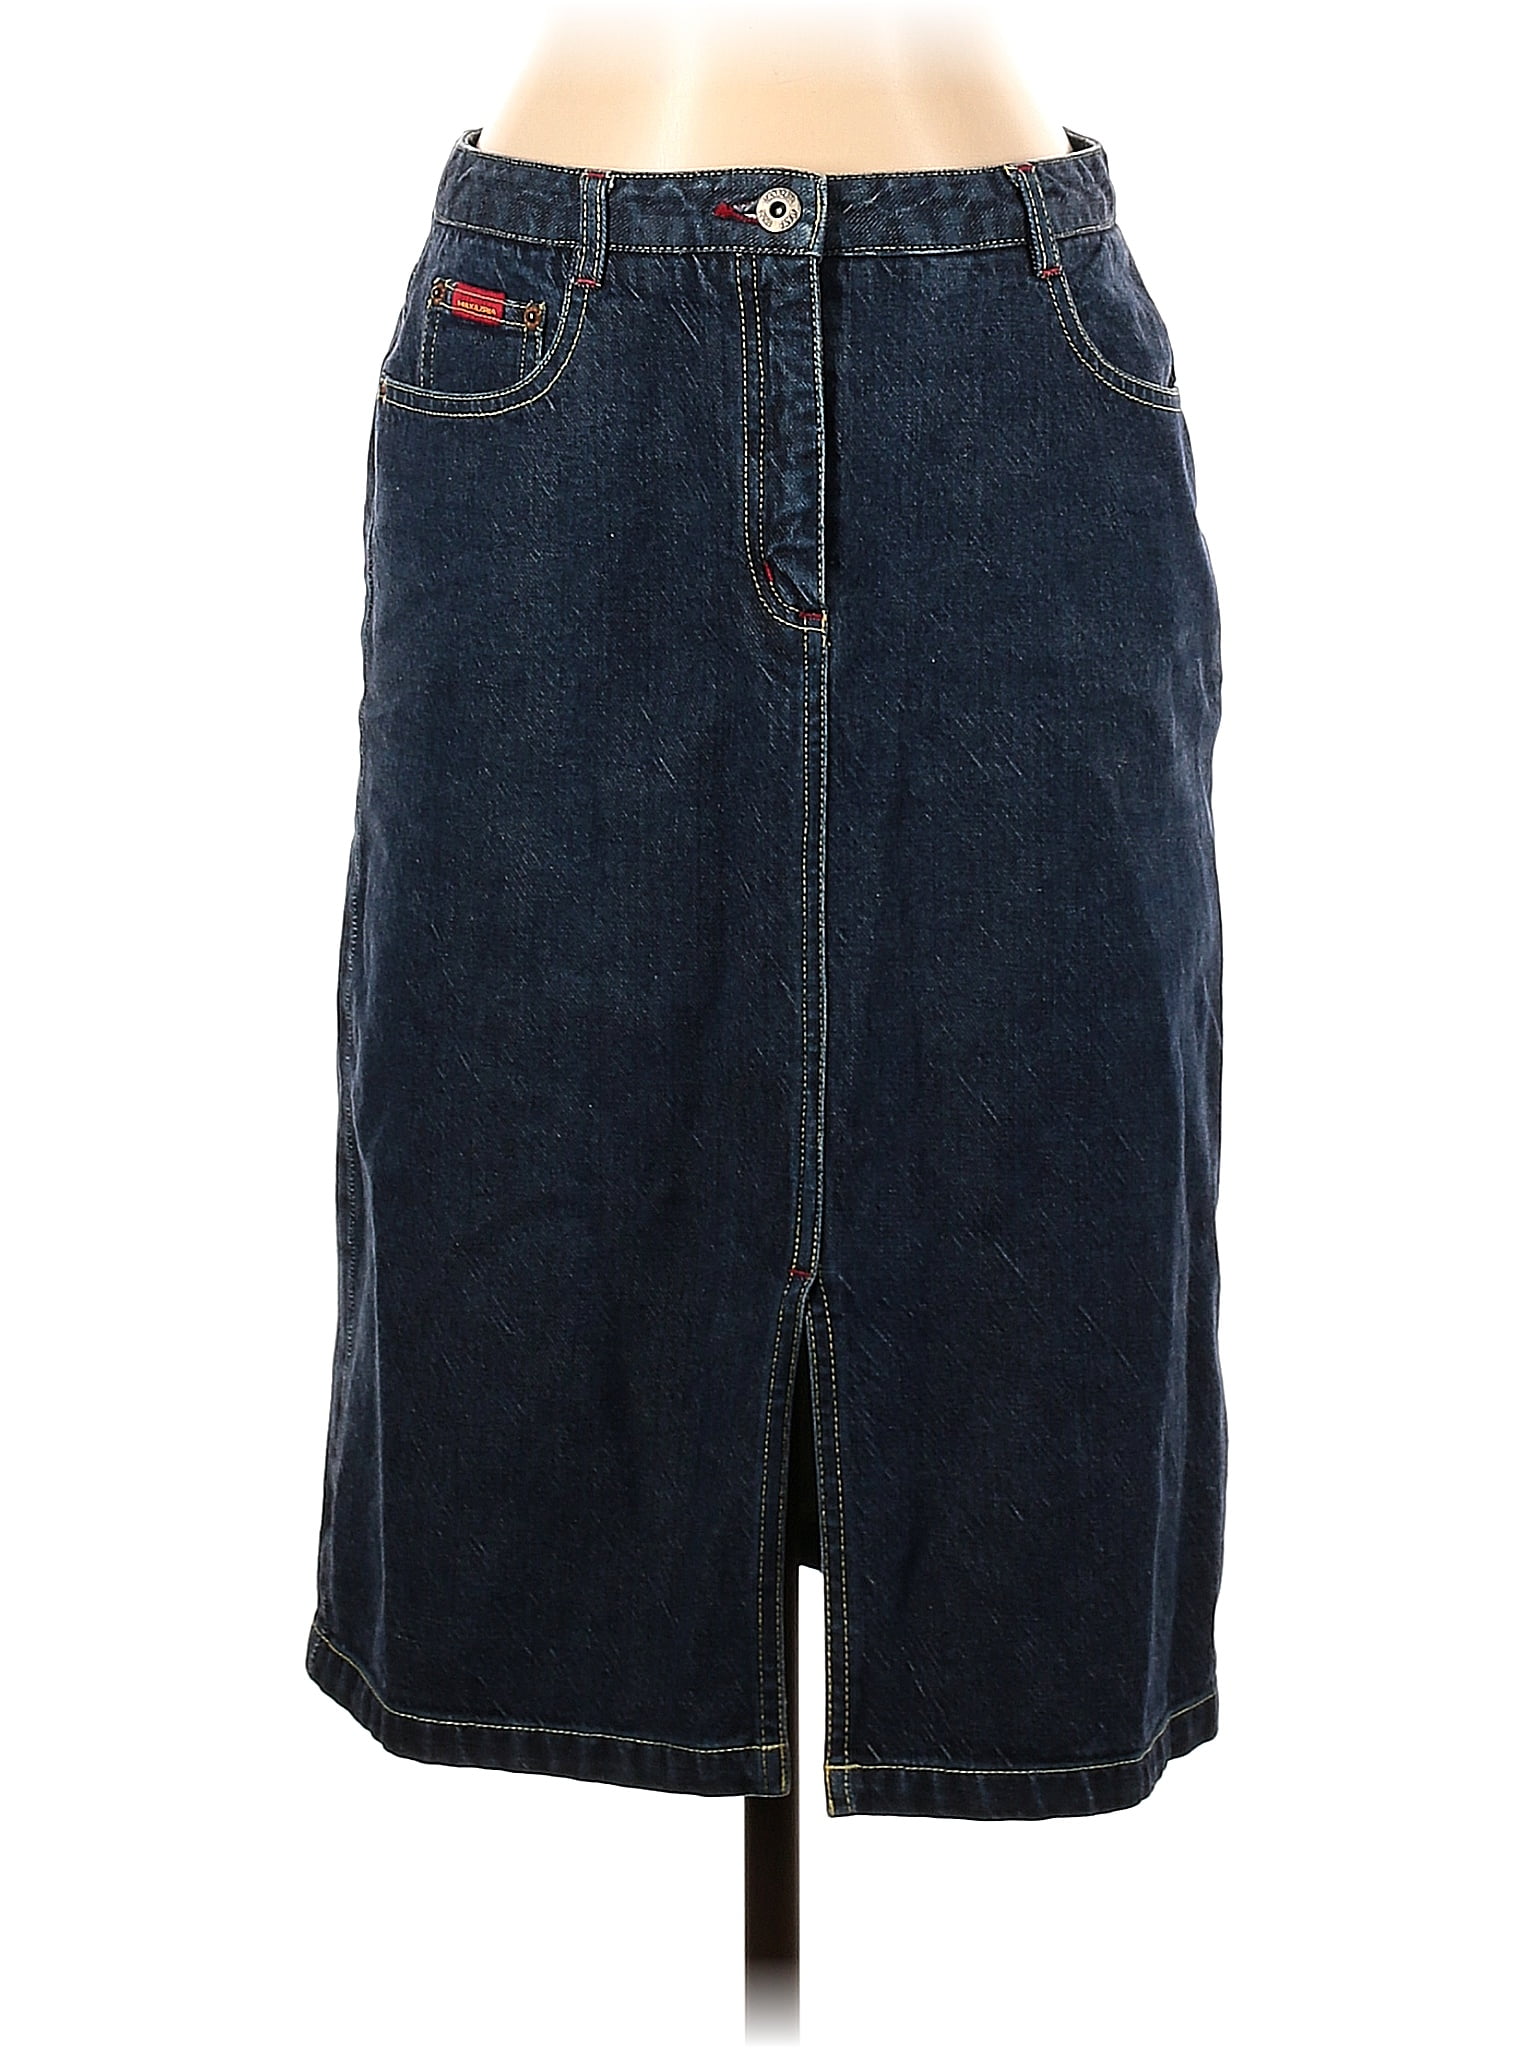 BCBGMAXAZRIA 100% Cotton Solid Blue Denim Skirt Size 4 - 85% off | thredUP